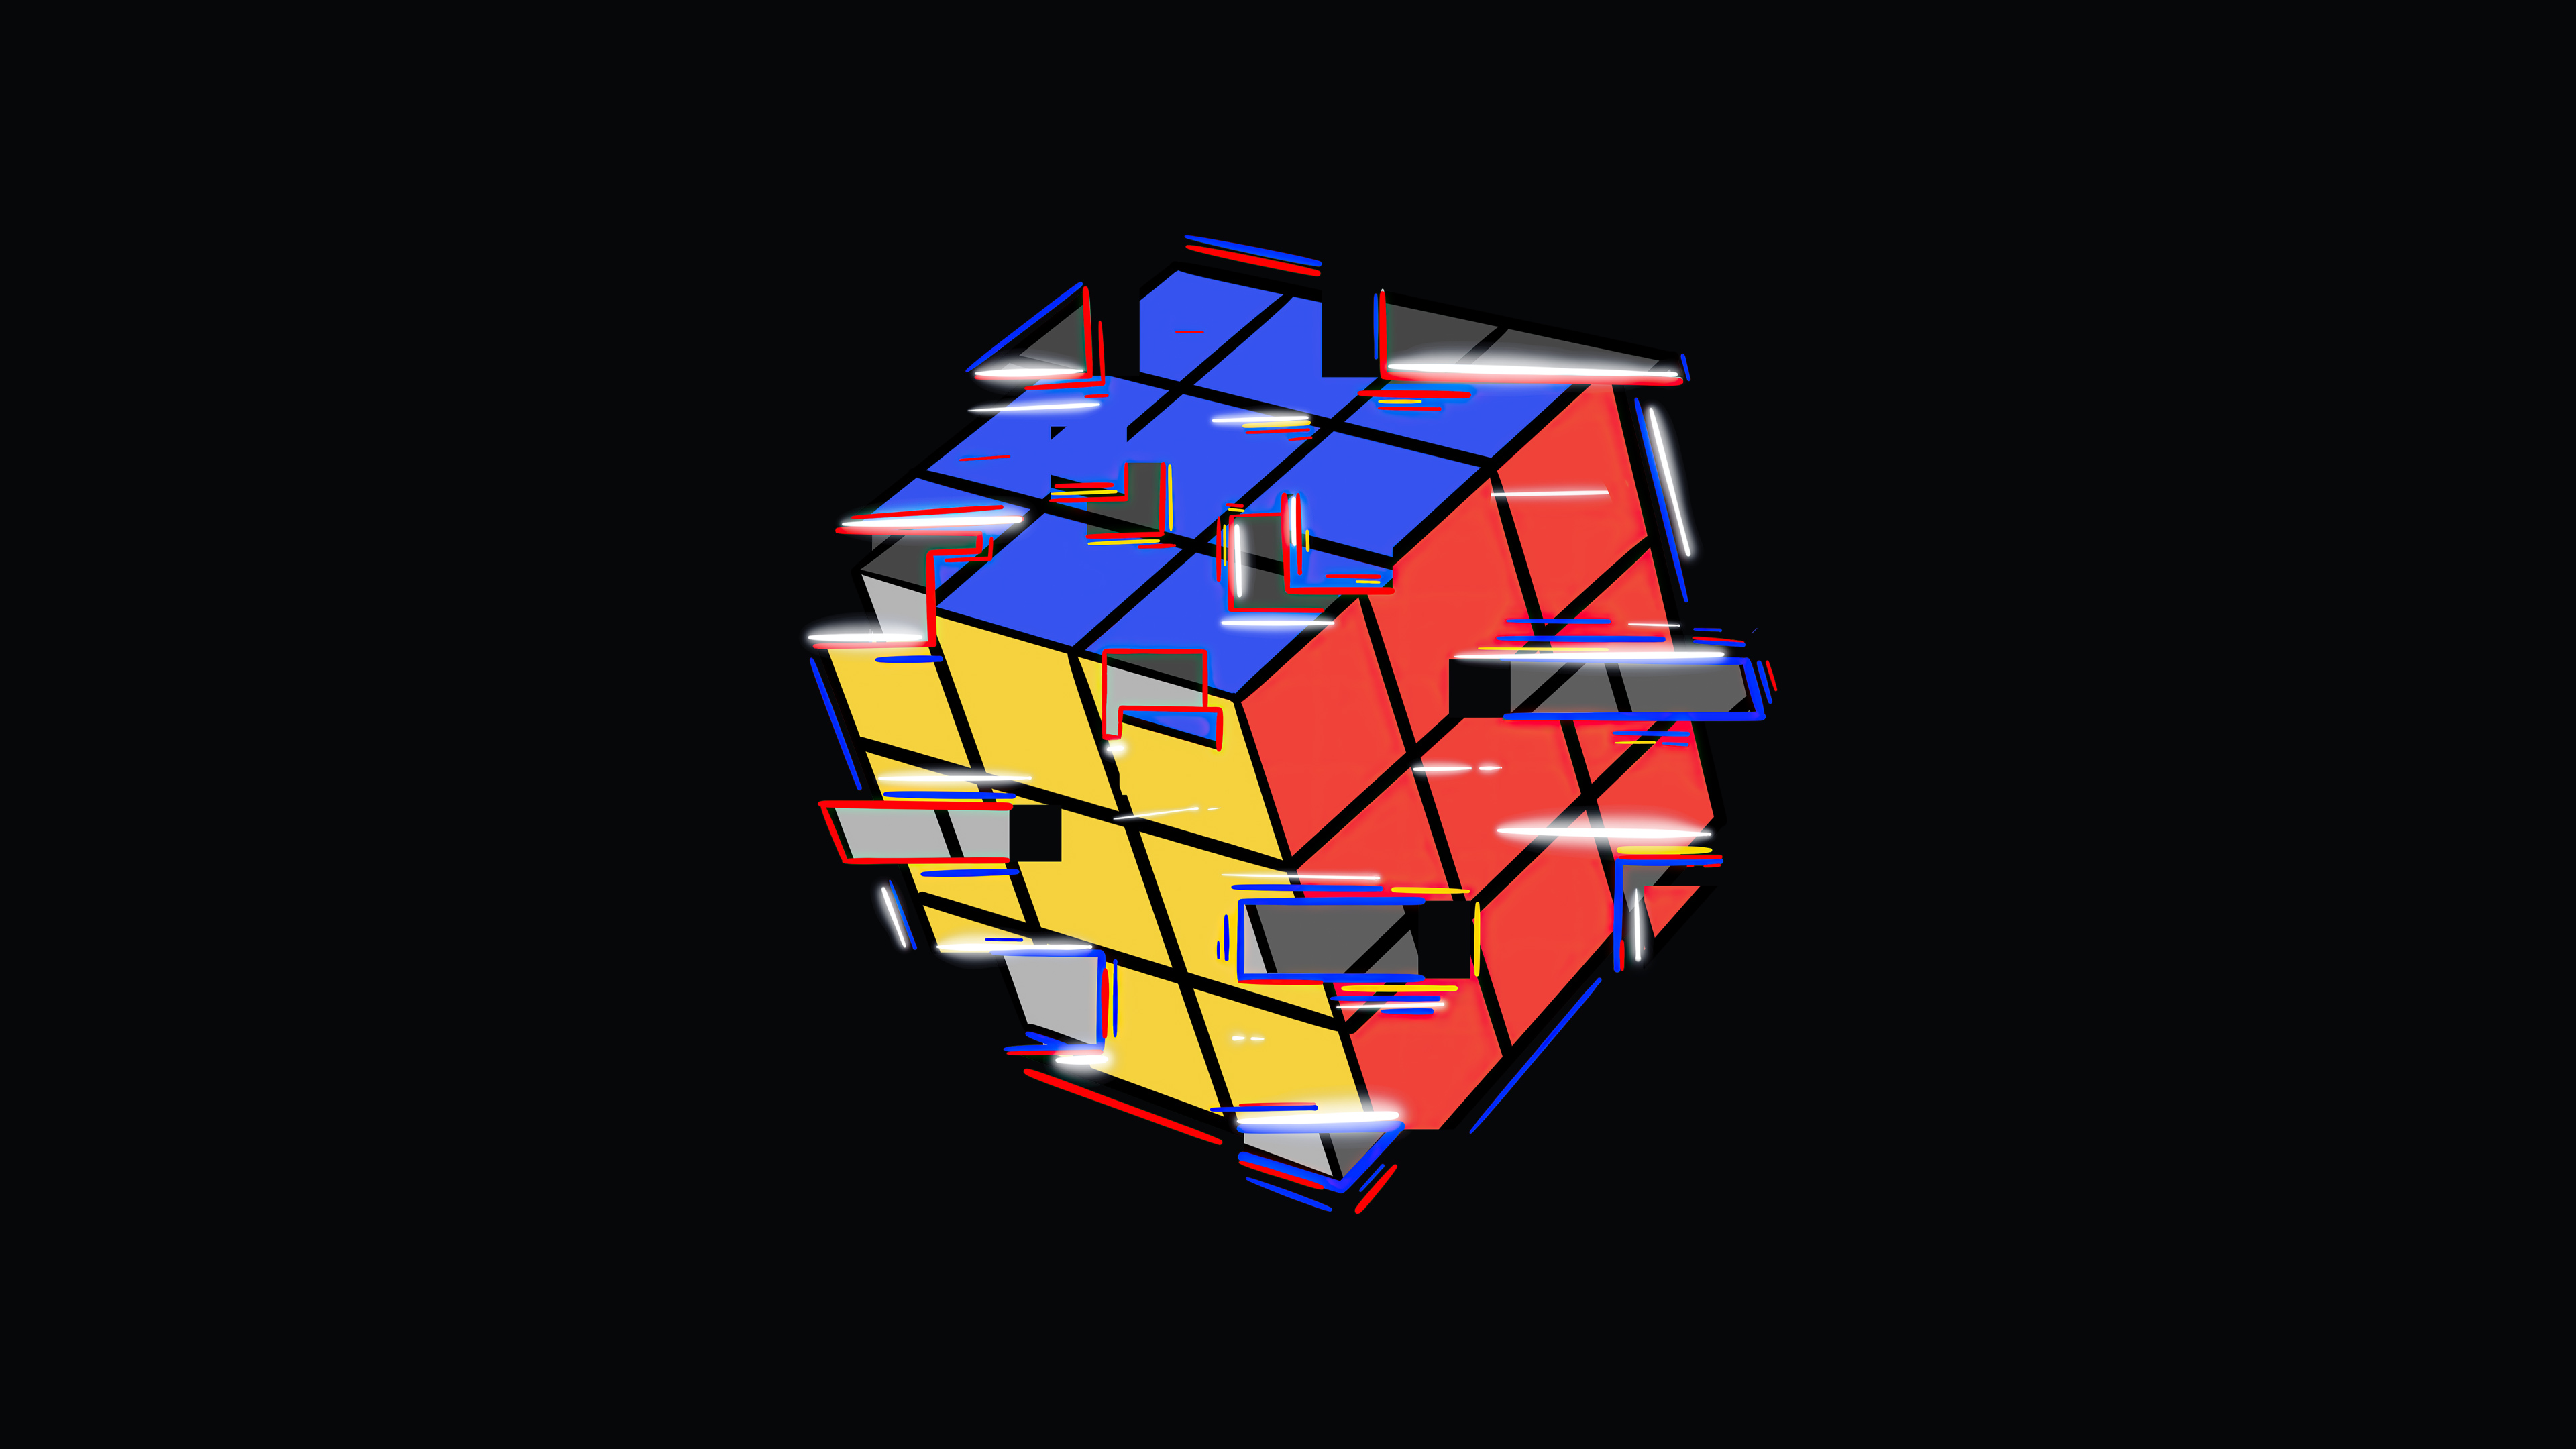 Hãy thưởng thức những hình nền Rubik đẹp nhất mà bạn từng thấy. Với các hình ảnh được thiết kế tỉ mỉ và phối hợp màu sắc điêu luyện, chắc chắn bạn sẽ không thể rời mắt khỏi chúng.